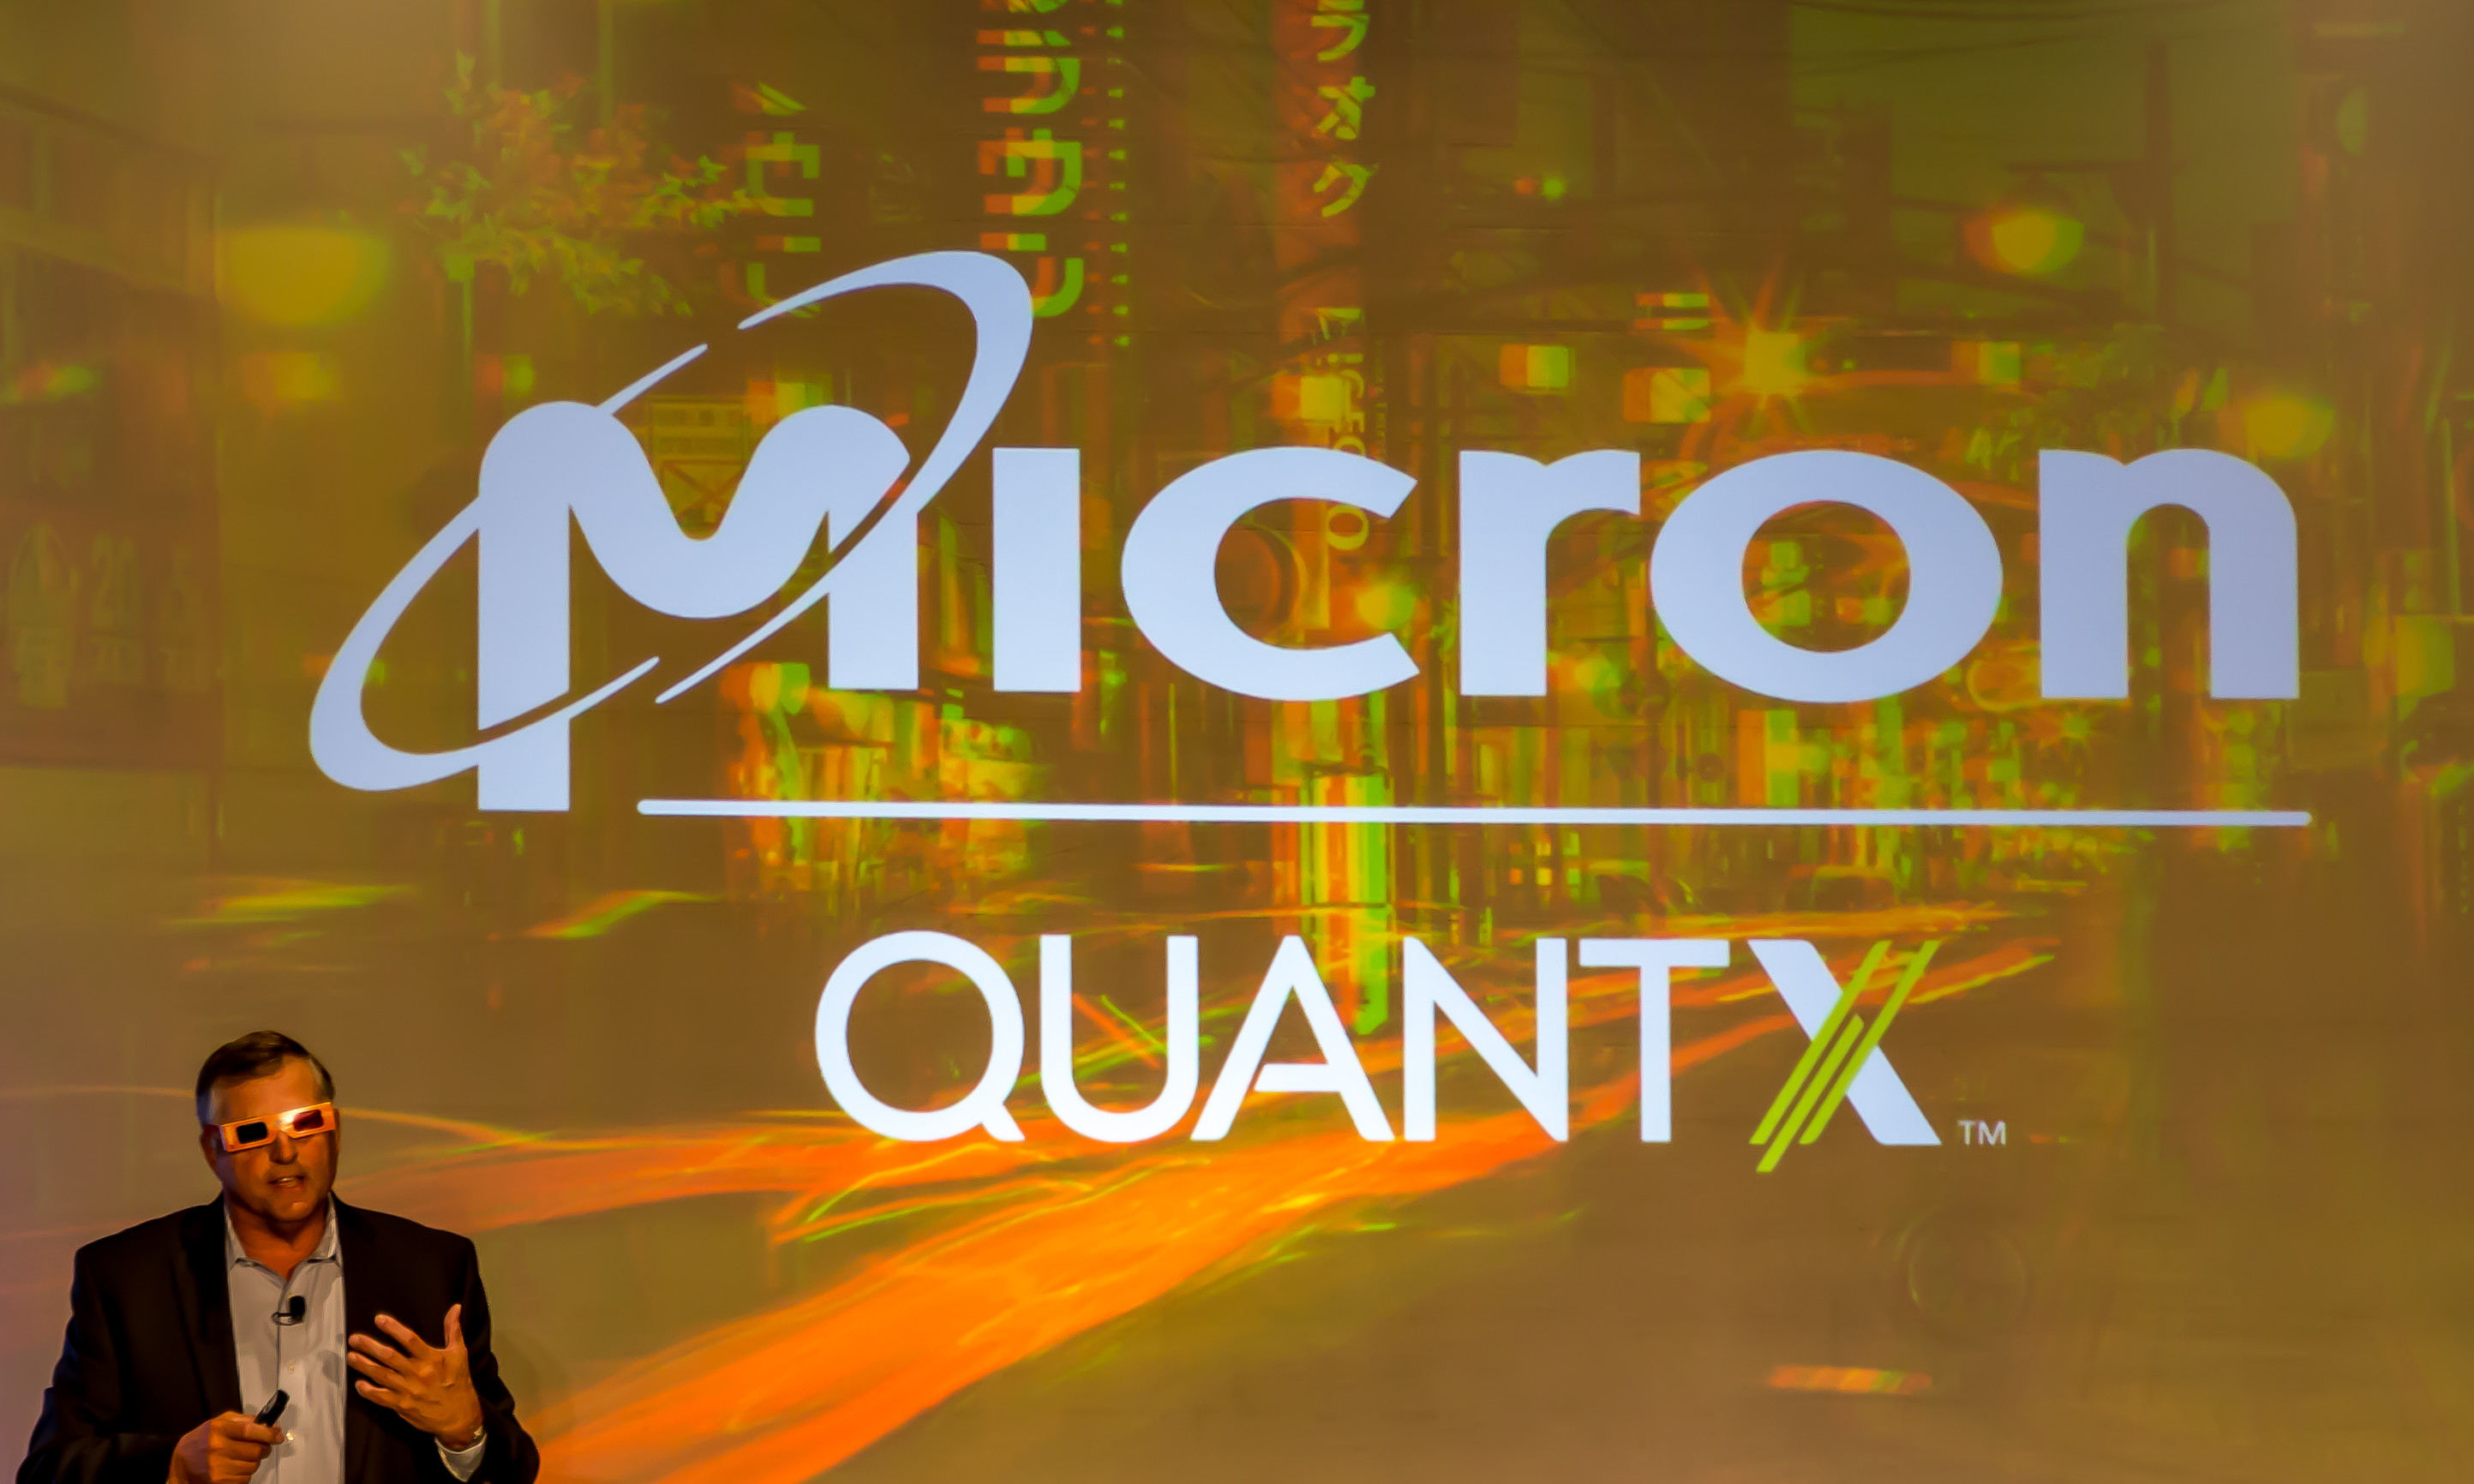 Τα προϊόντα QuantX της Micron, που είναι παρόμοια με τα Optane της Intel, θα κυκλοφορήσουν τέλη του 2017